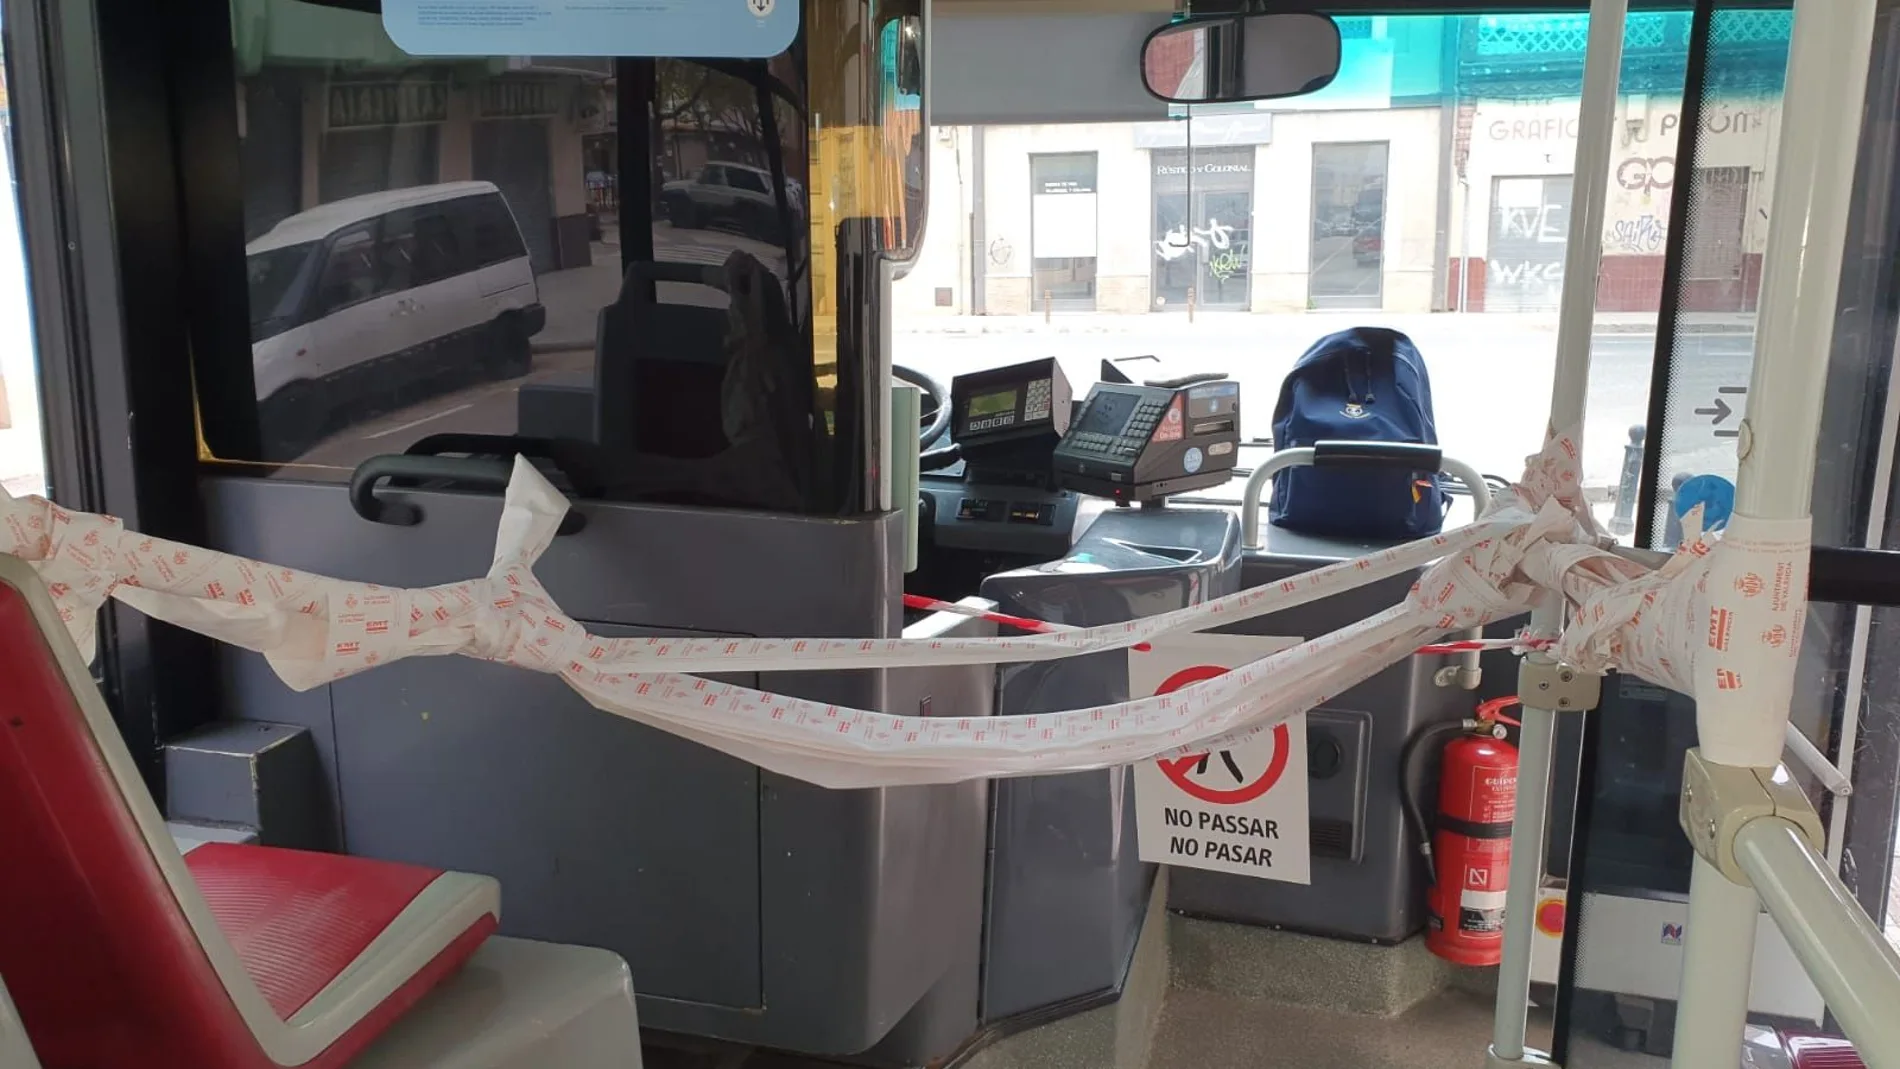 En el caso del autobús de la imagen, se han utilizado los rollos de tickets para tratar de separar al conductor de los pasajeros